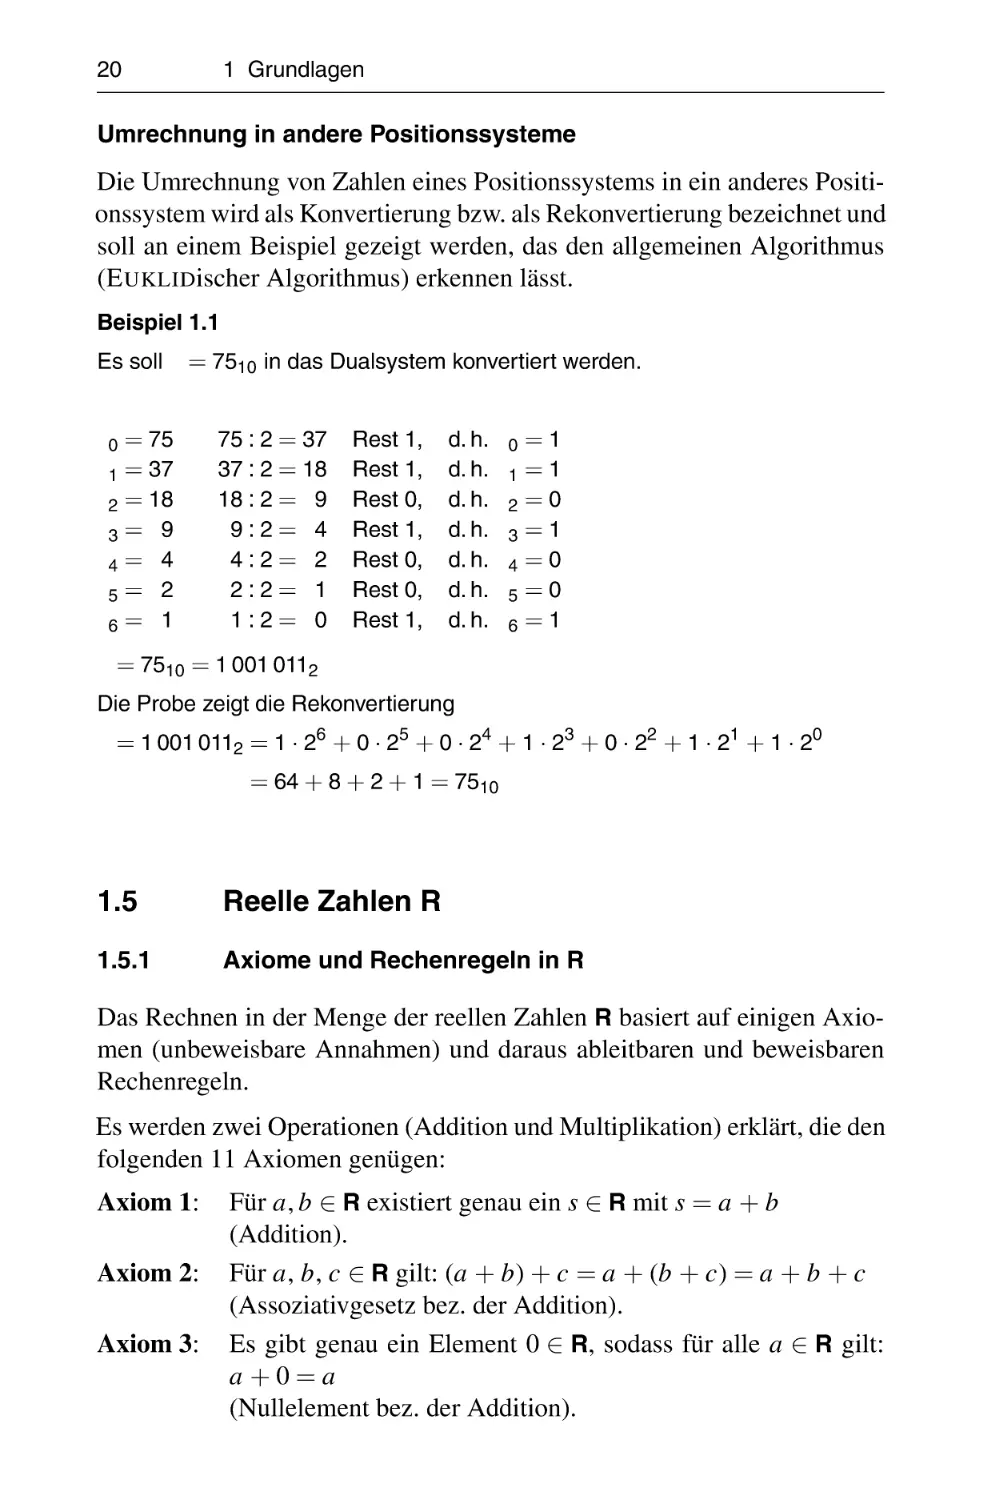 1.5 Reelle Zahlen R
1.5.1 Axiome und Rechenregeln in R